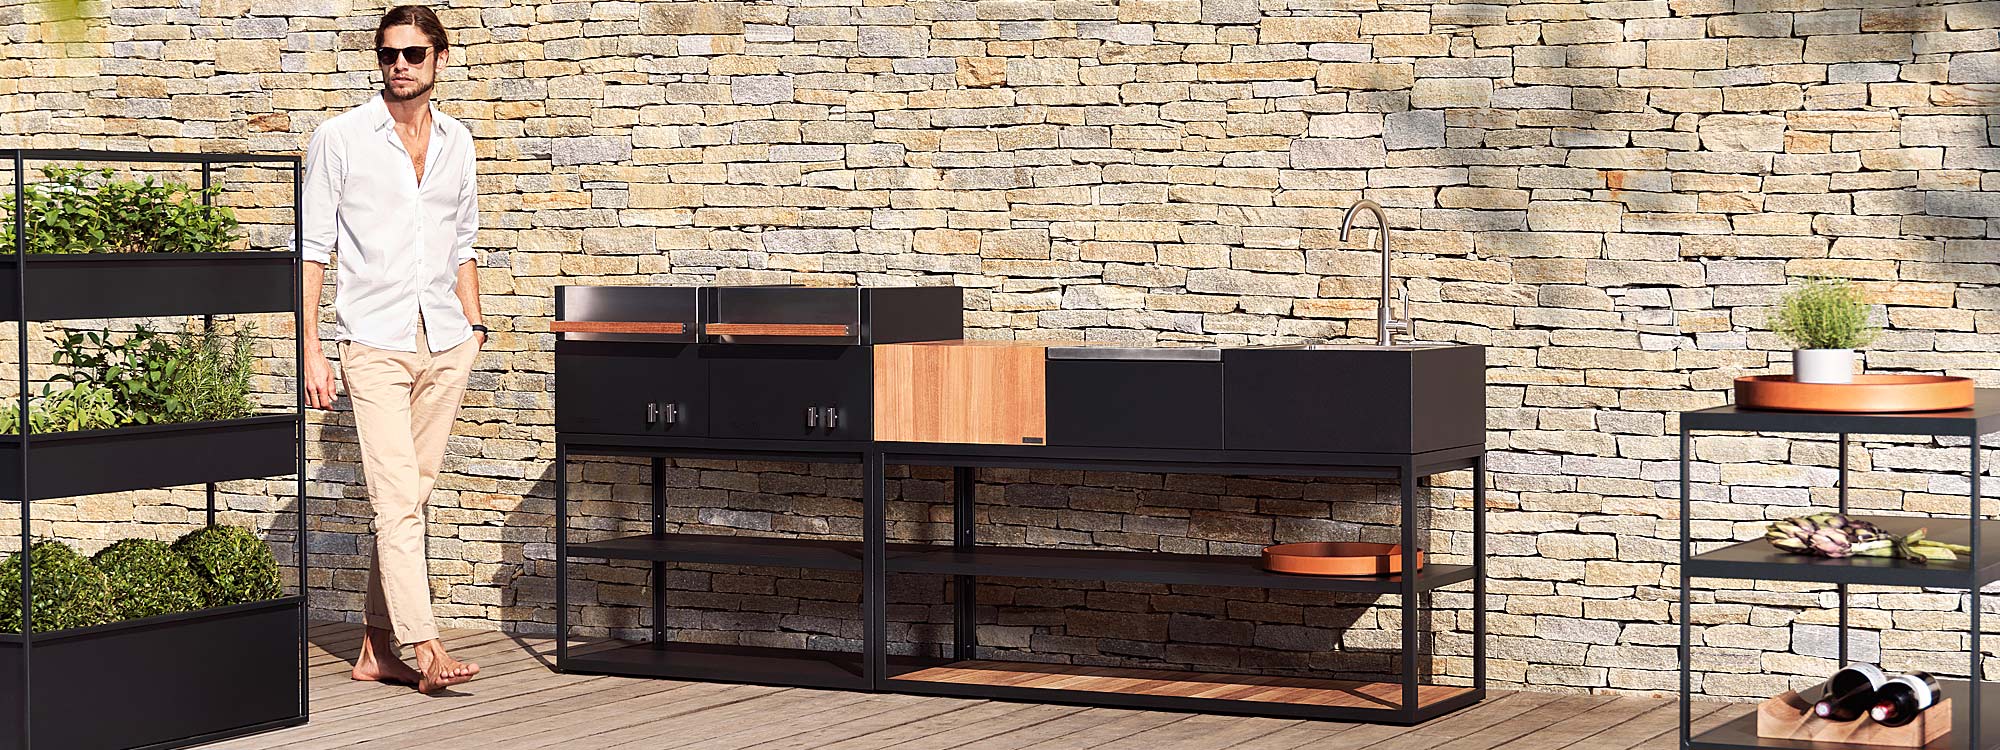 Open Kitchen modern outdoor kitchen is a versatile modular garden kitchen & minimalist BBQ by Roshults luxury BBQ company, Sweden.